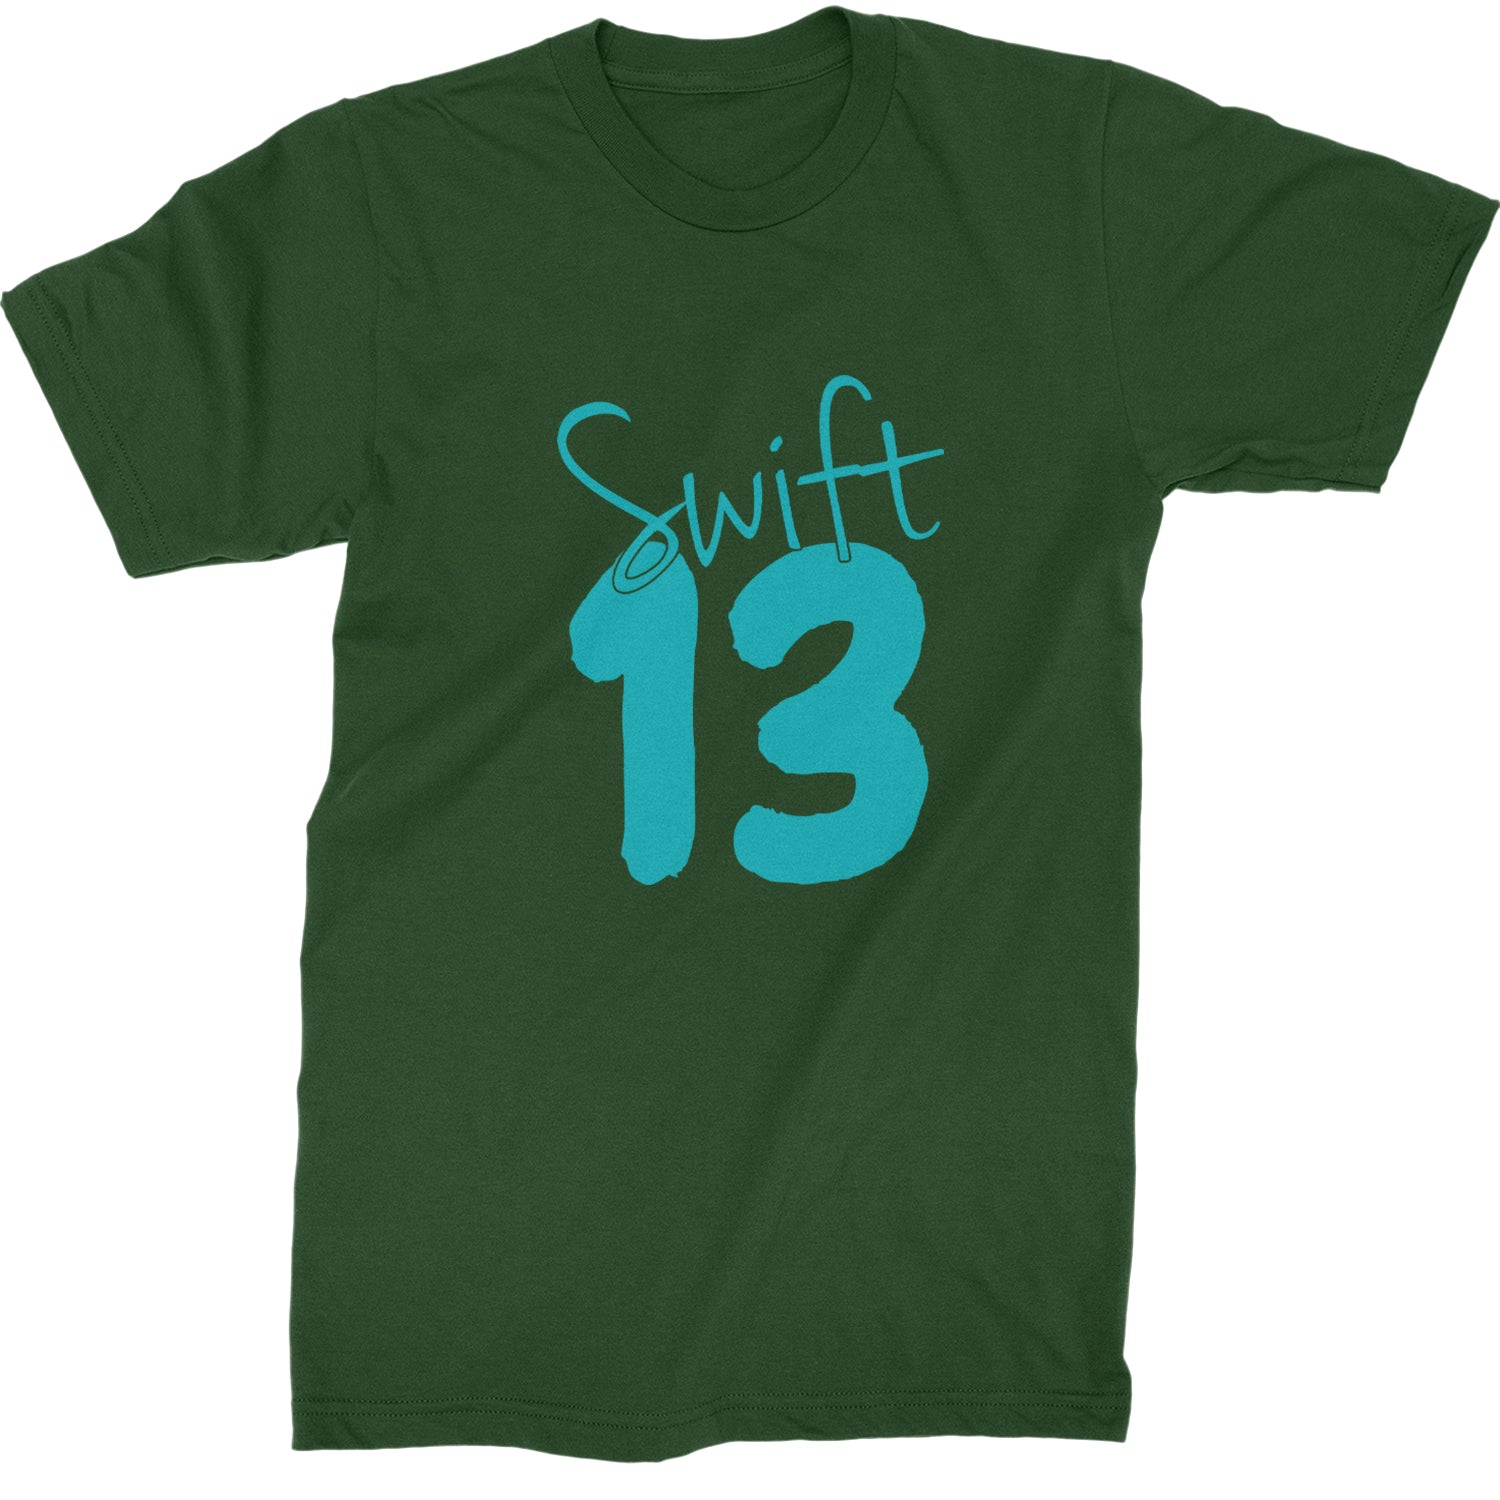 13 Swift 13 Lucky Number Era TTPD Mens T-shirt Forest Green